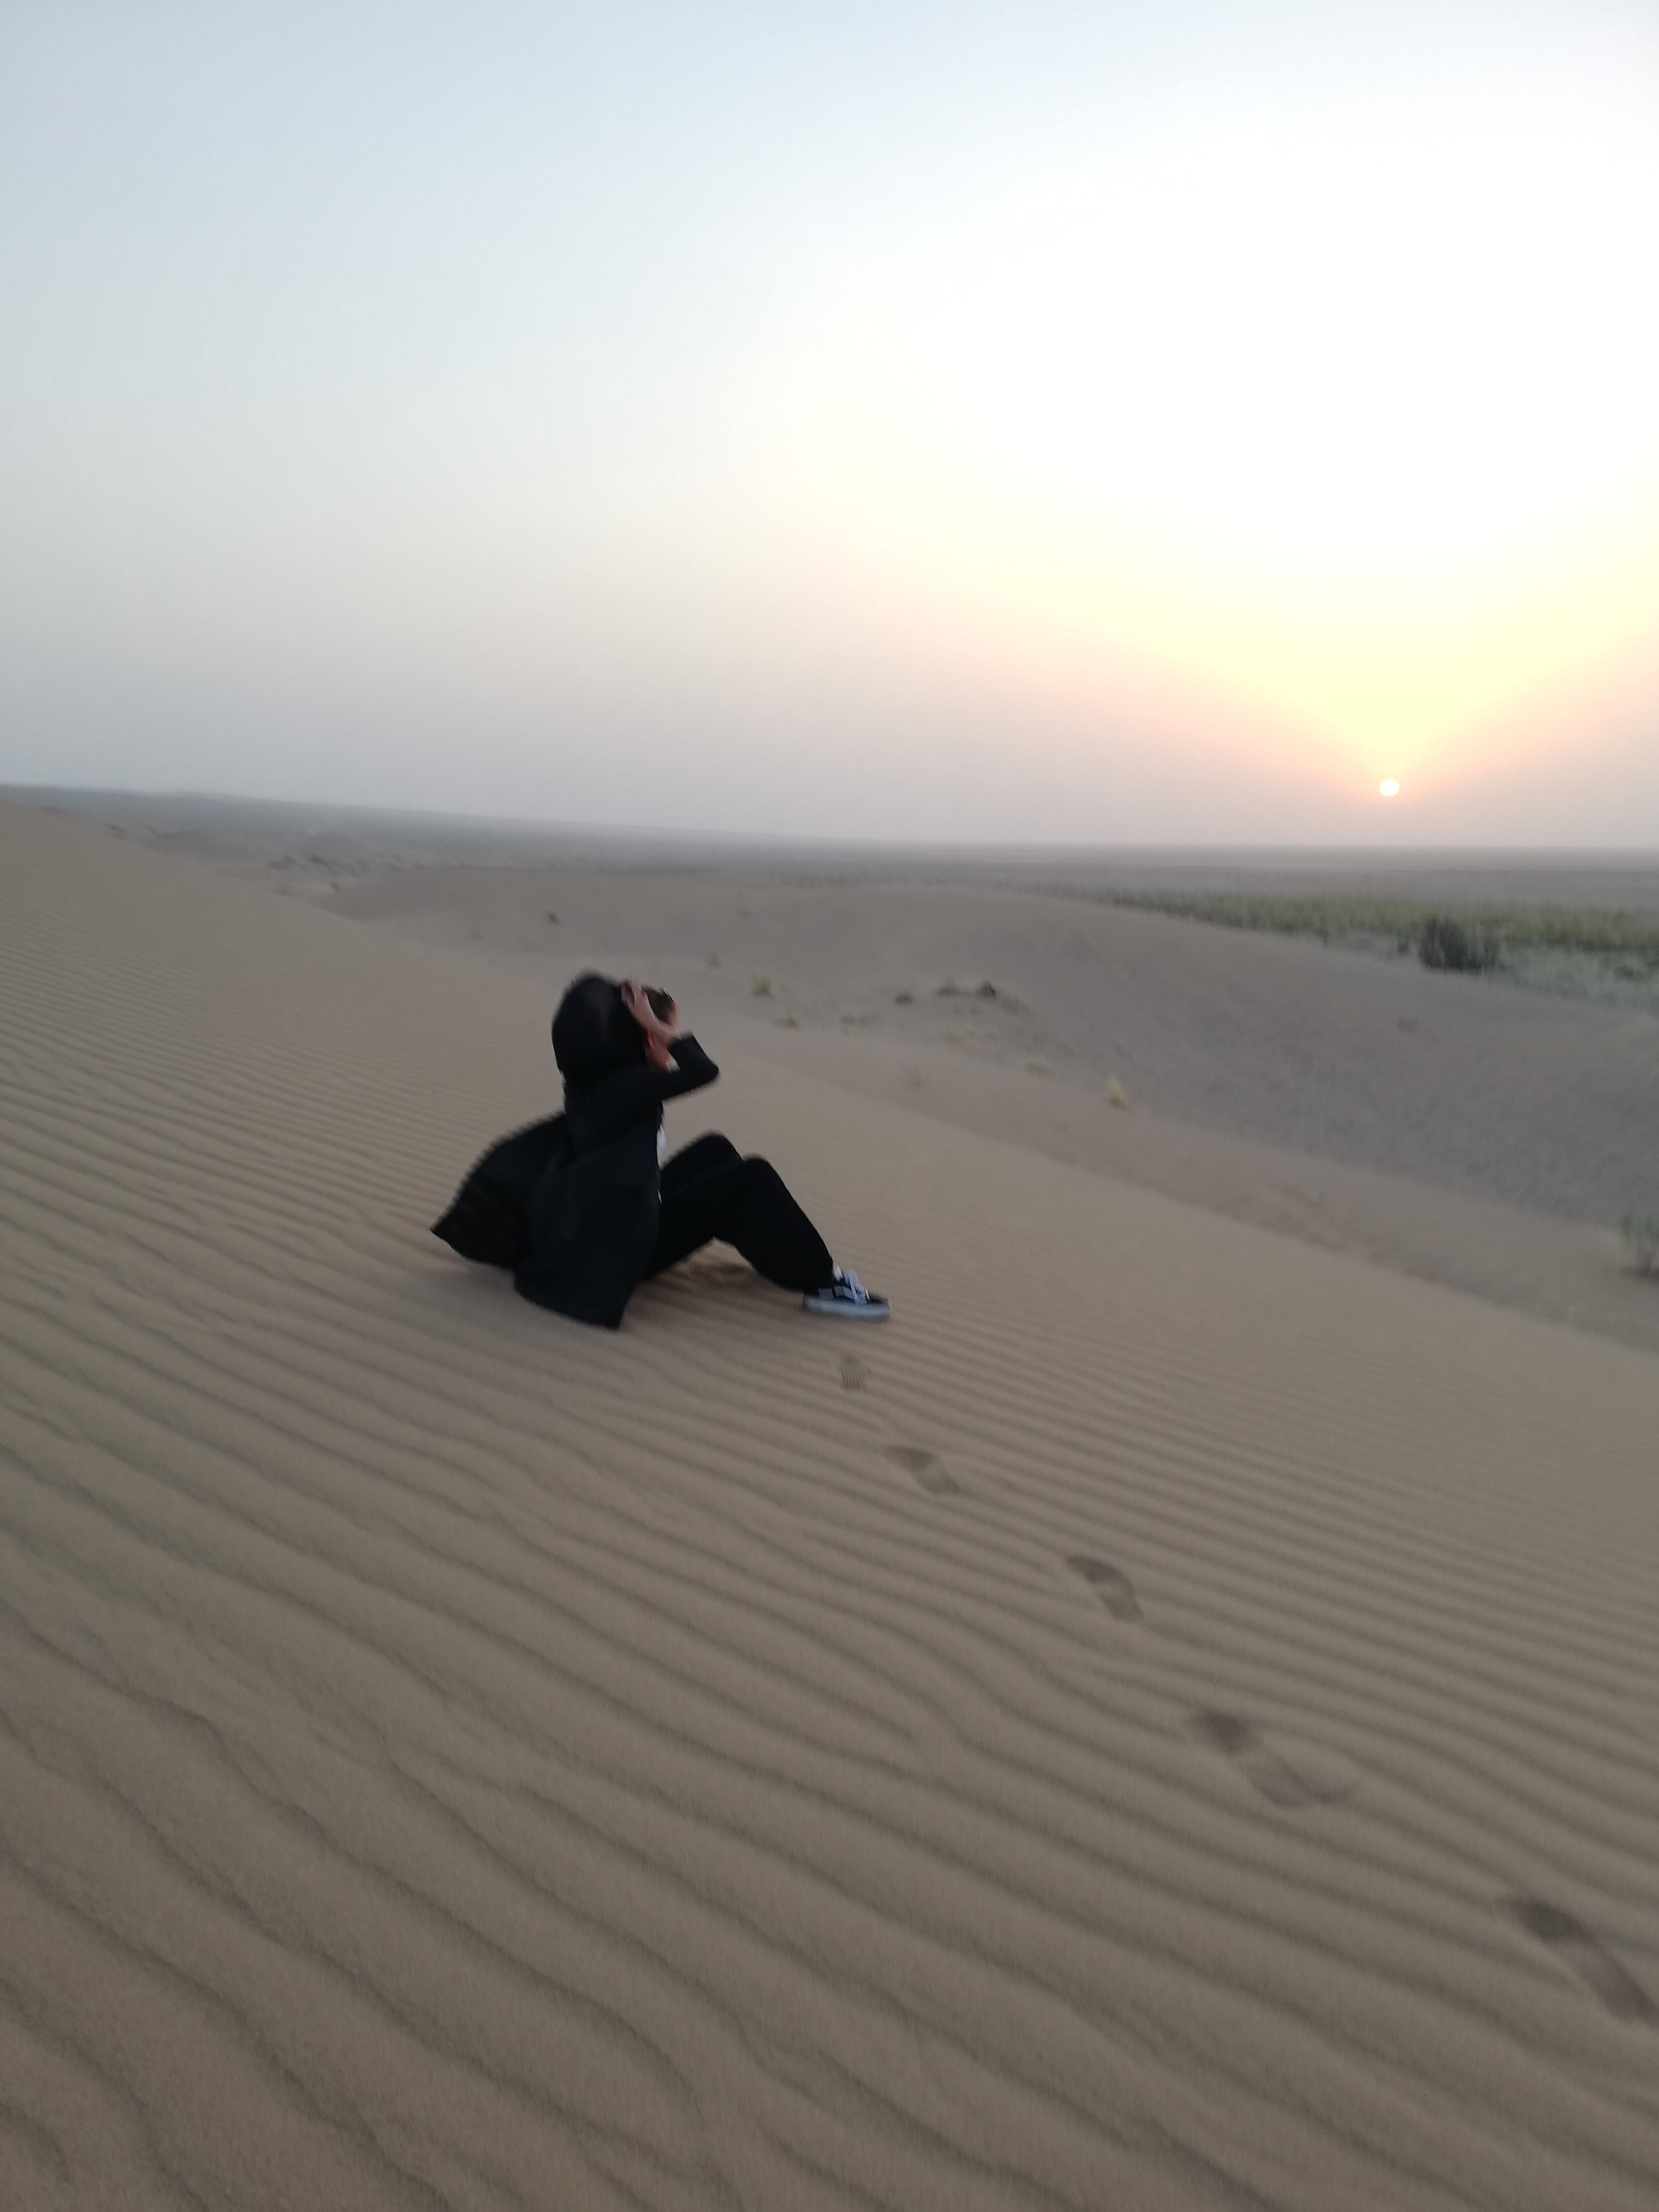 #sundowner #sunset #desert #trip #wüste #kashan #quom #teheran #iran #meinlebenimiran #mylifeabroad #liebe 